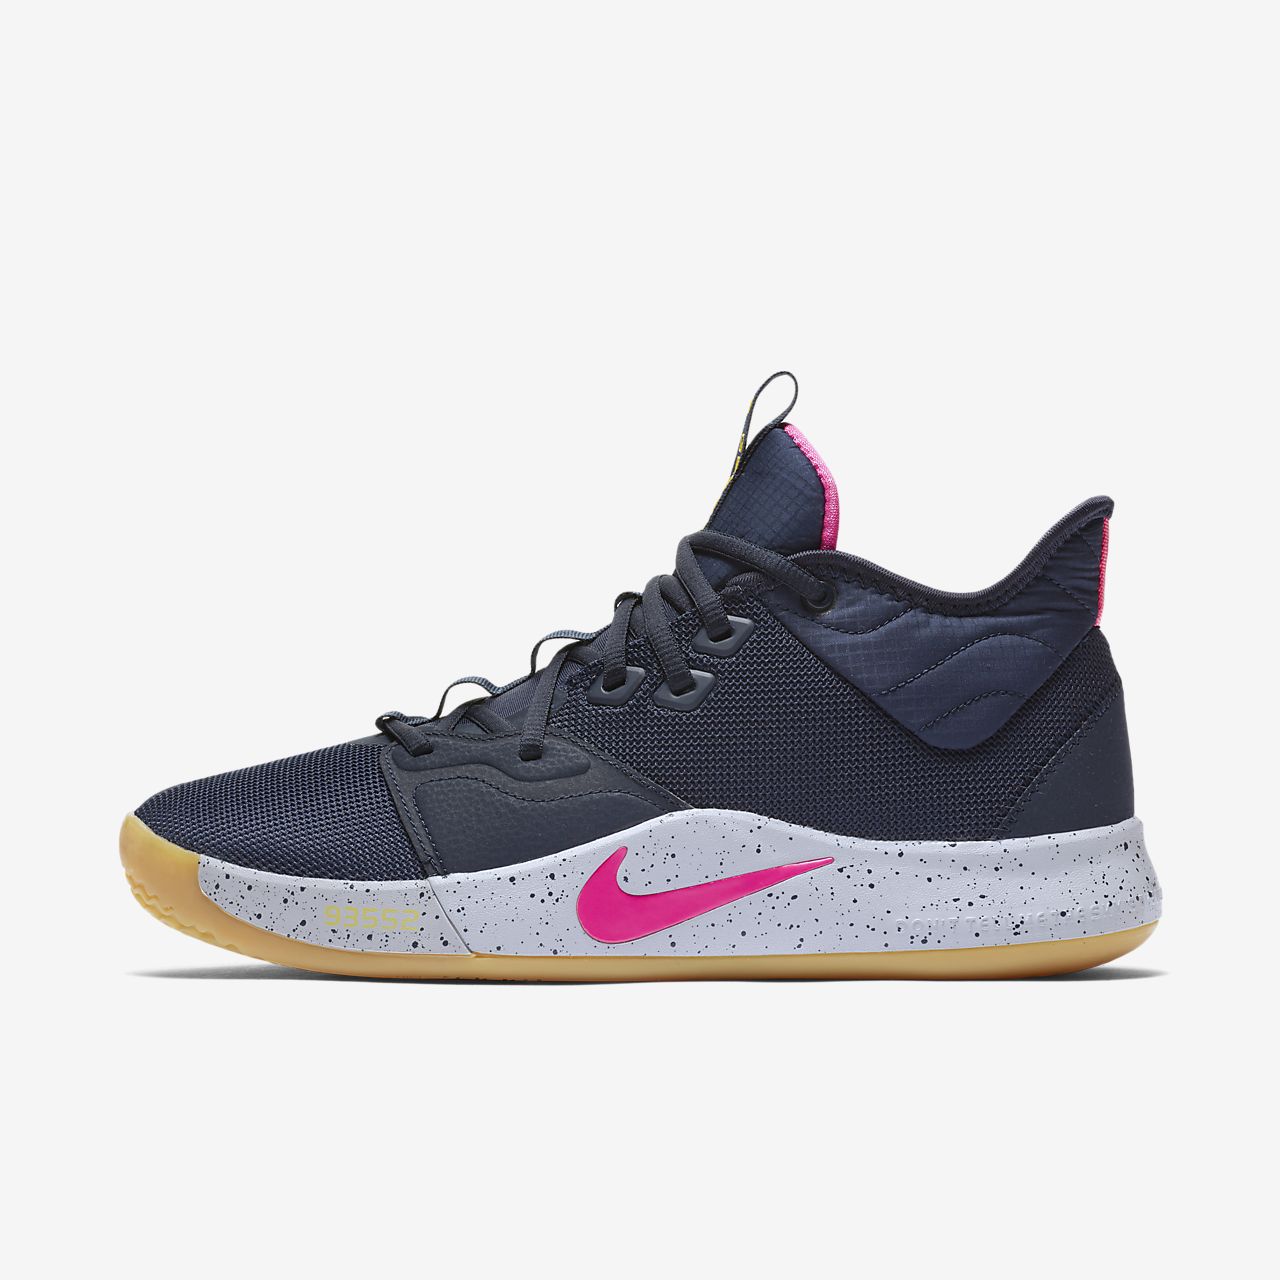 PG 3 Basketball Shoe. Nike EG